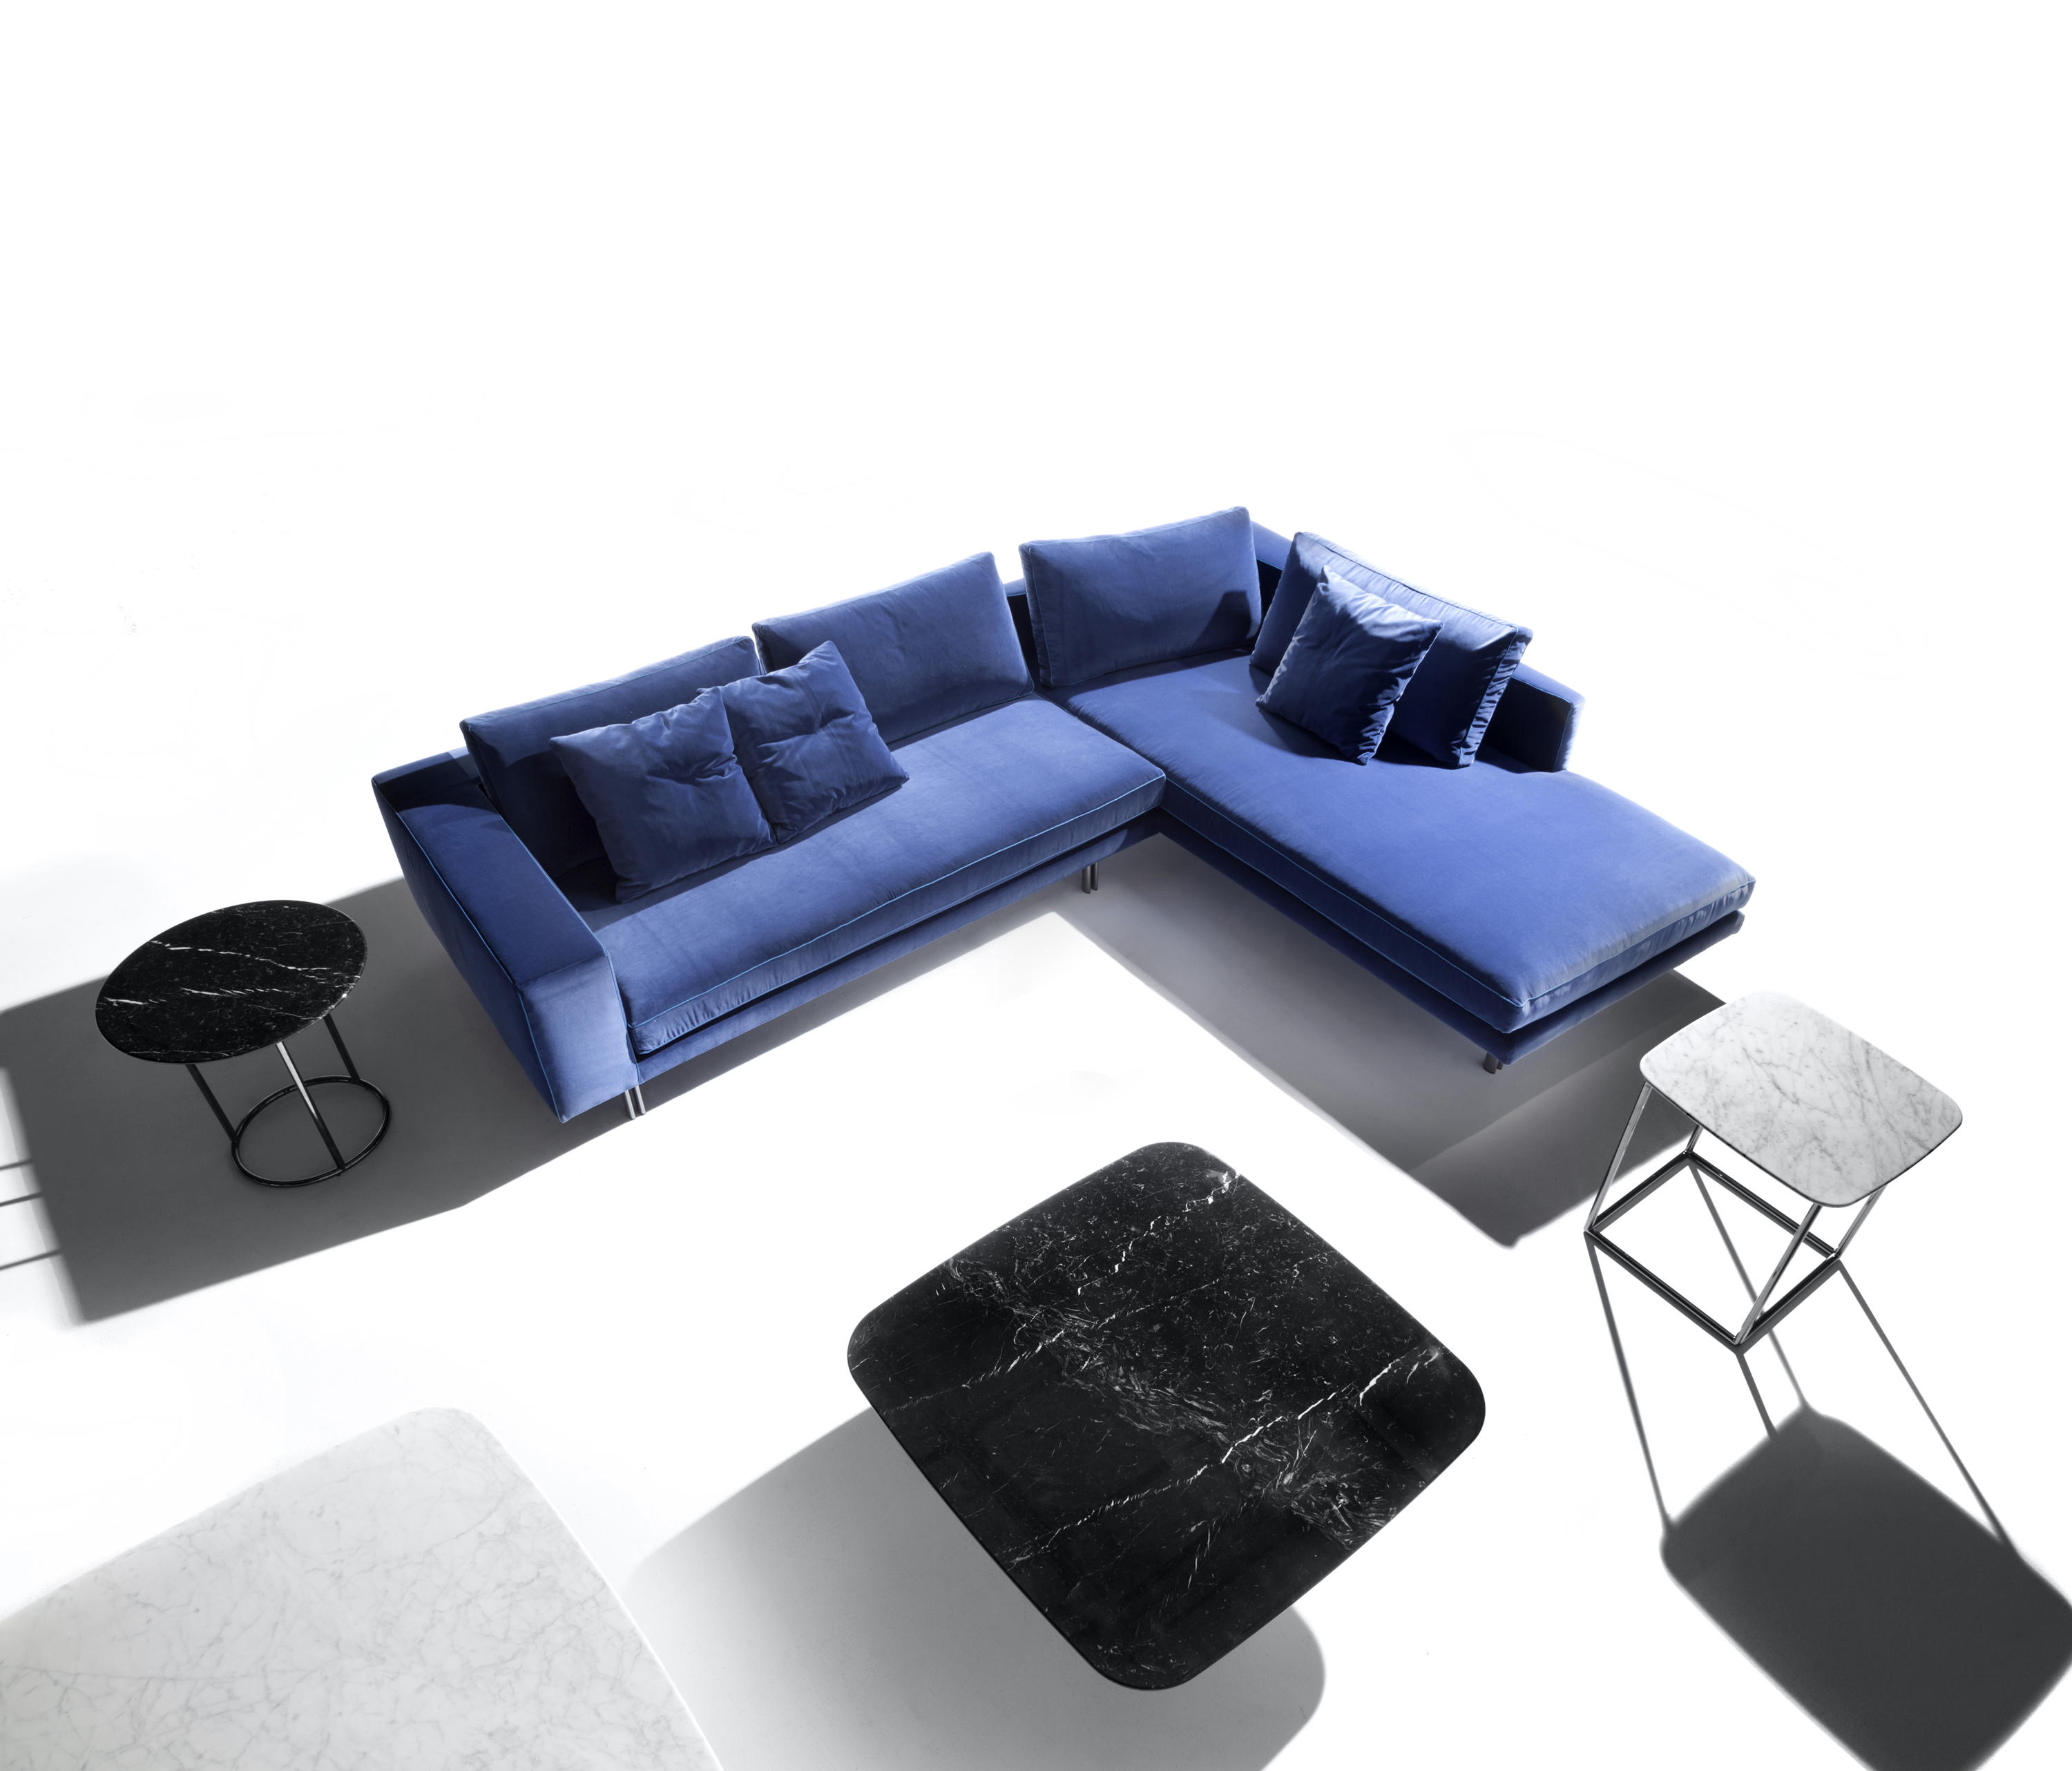 Inno Sofa Collection by Erba Italia